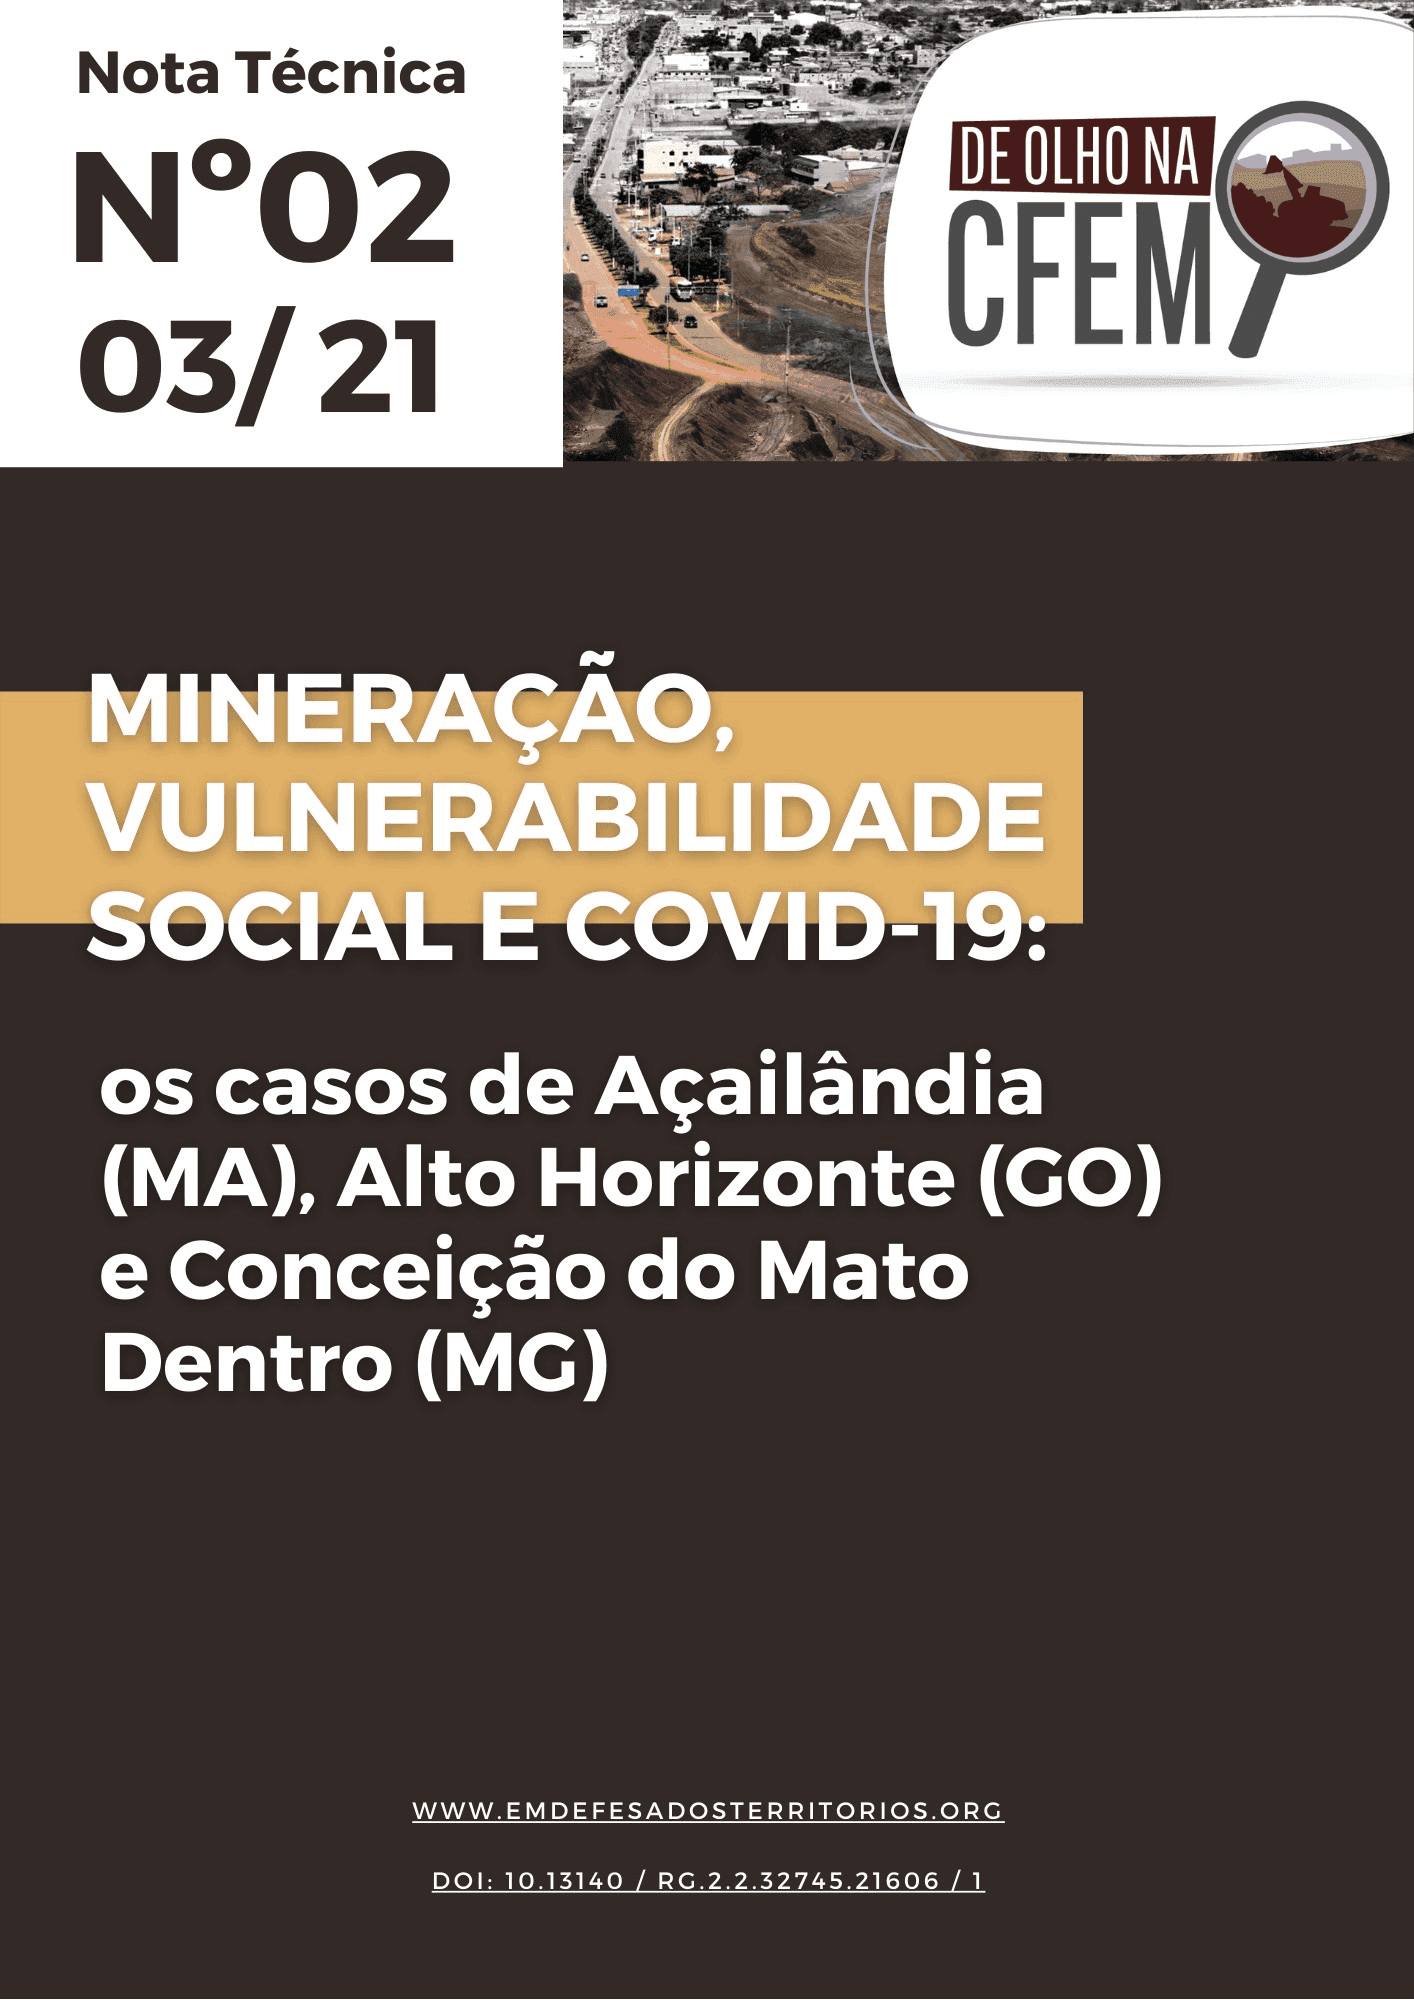 Imagem destacada da postagem Nota Técnica “Mineração, Vulnerabilidade Social e Covid-19: os casos de Açailândia (MA), Alto Horizonte (GO) e Conceição do Mato Dentro (MG)”